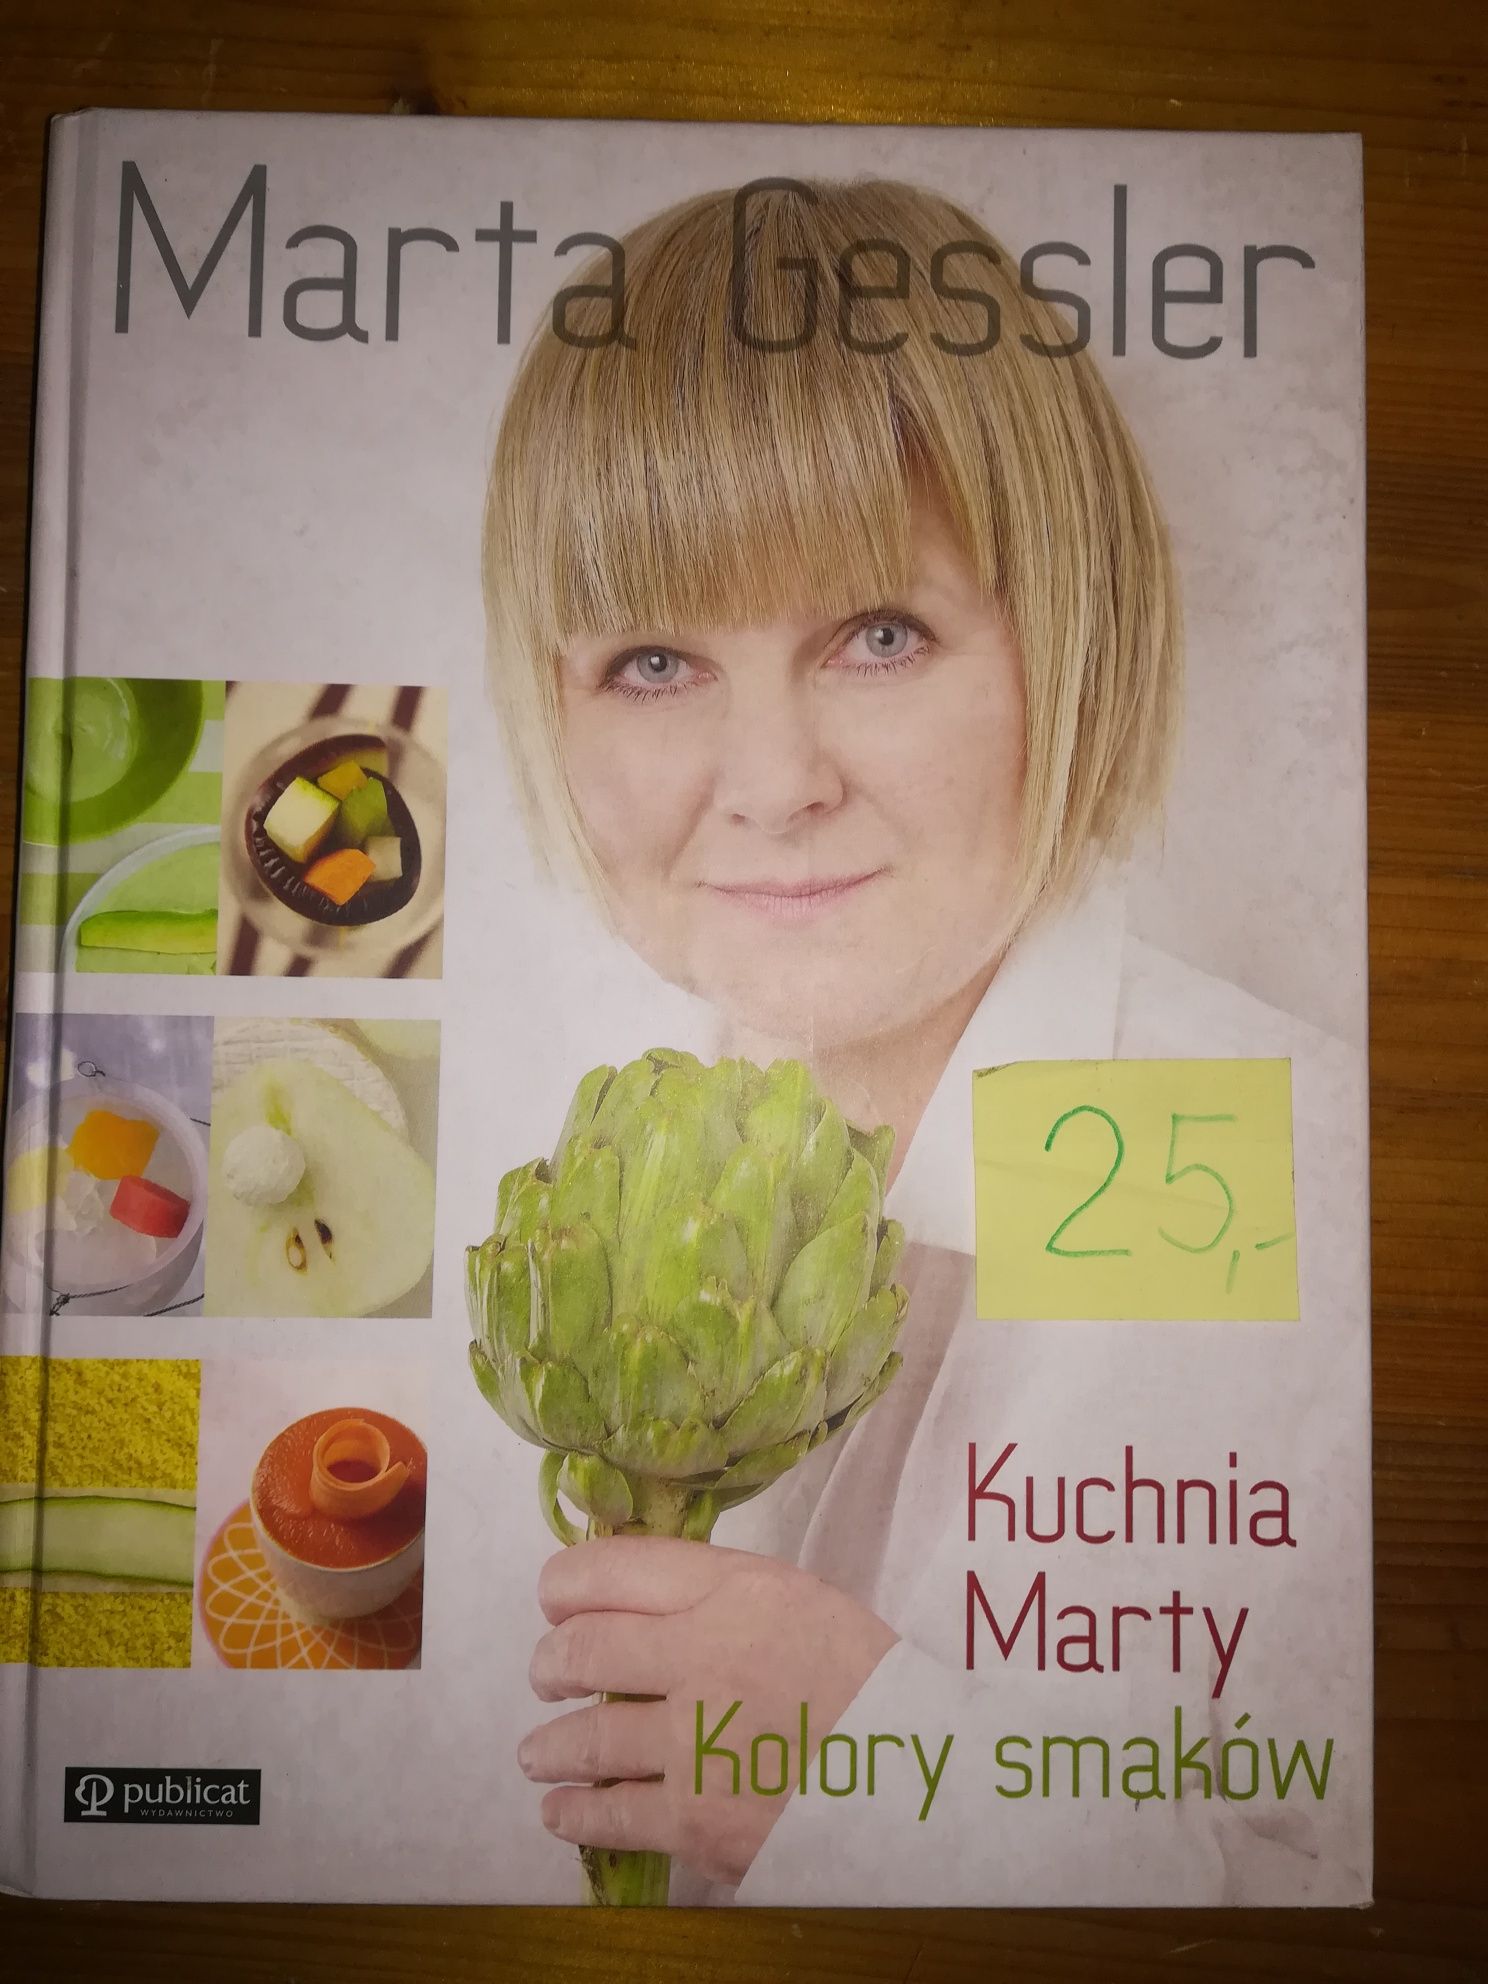 Marta Gessler Kuchnia Marty Kolory Smaków Nowa (twarda)